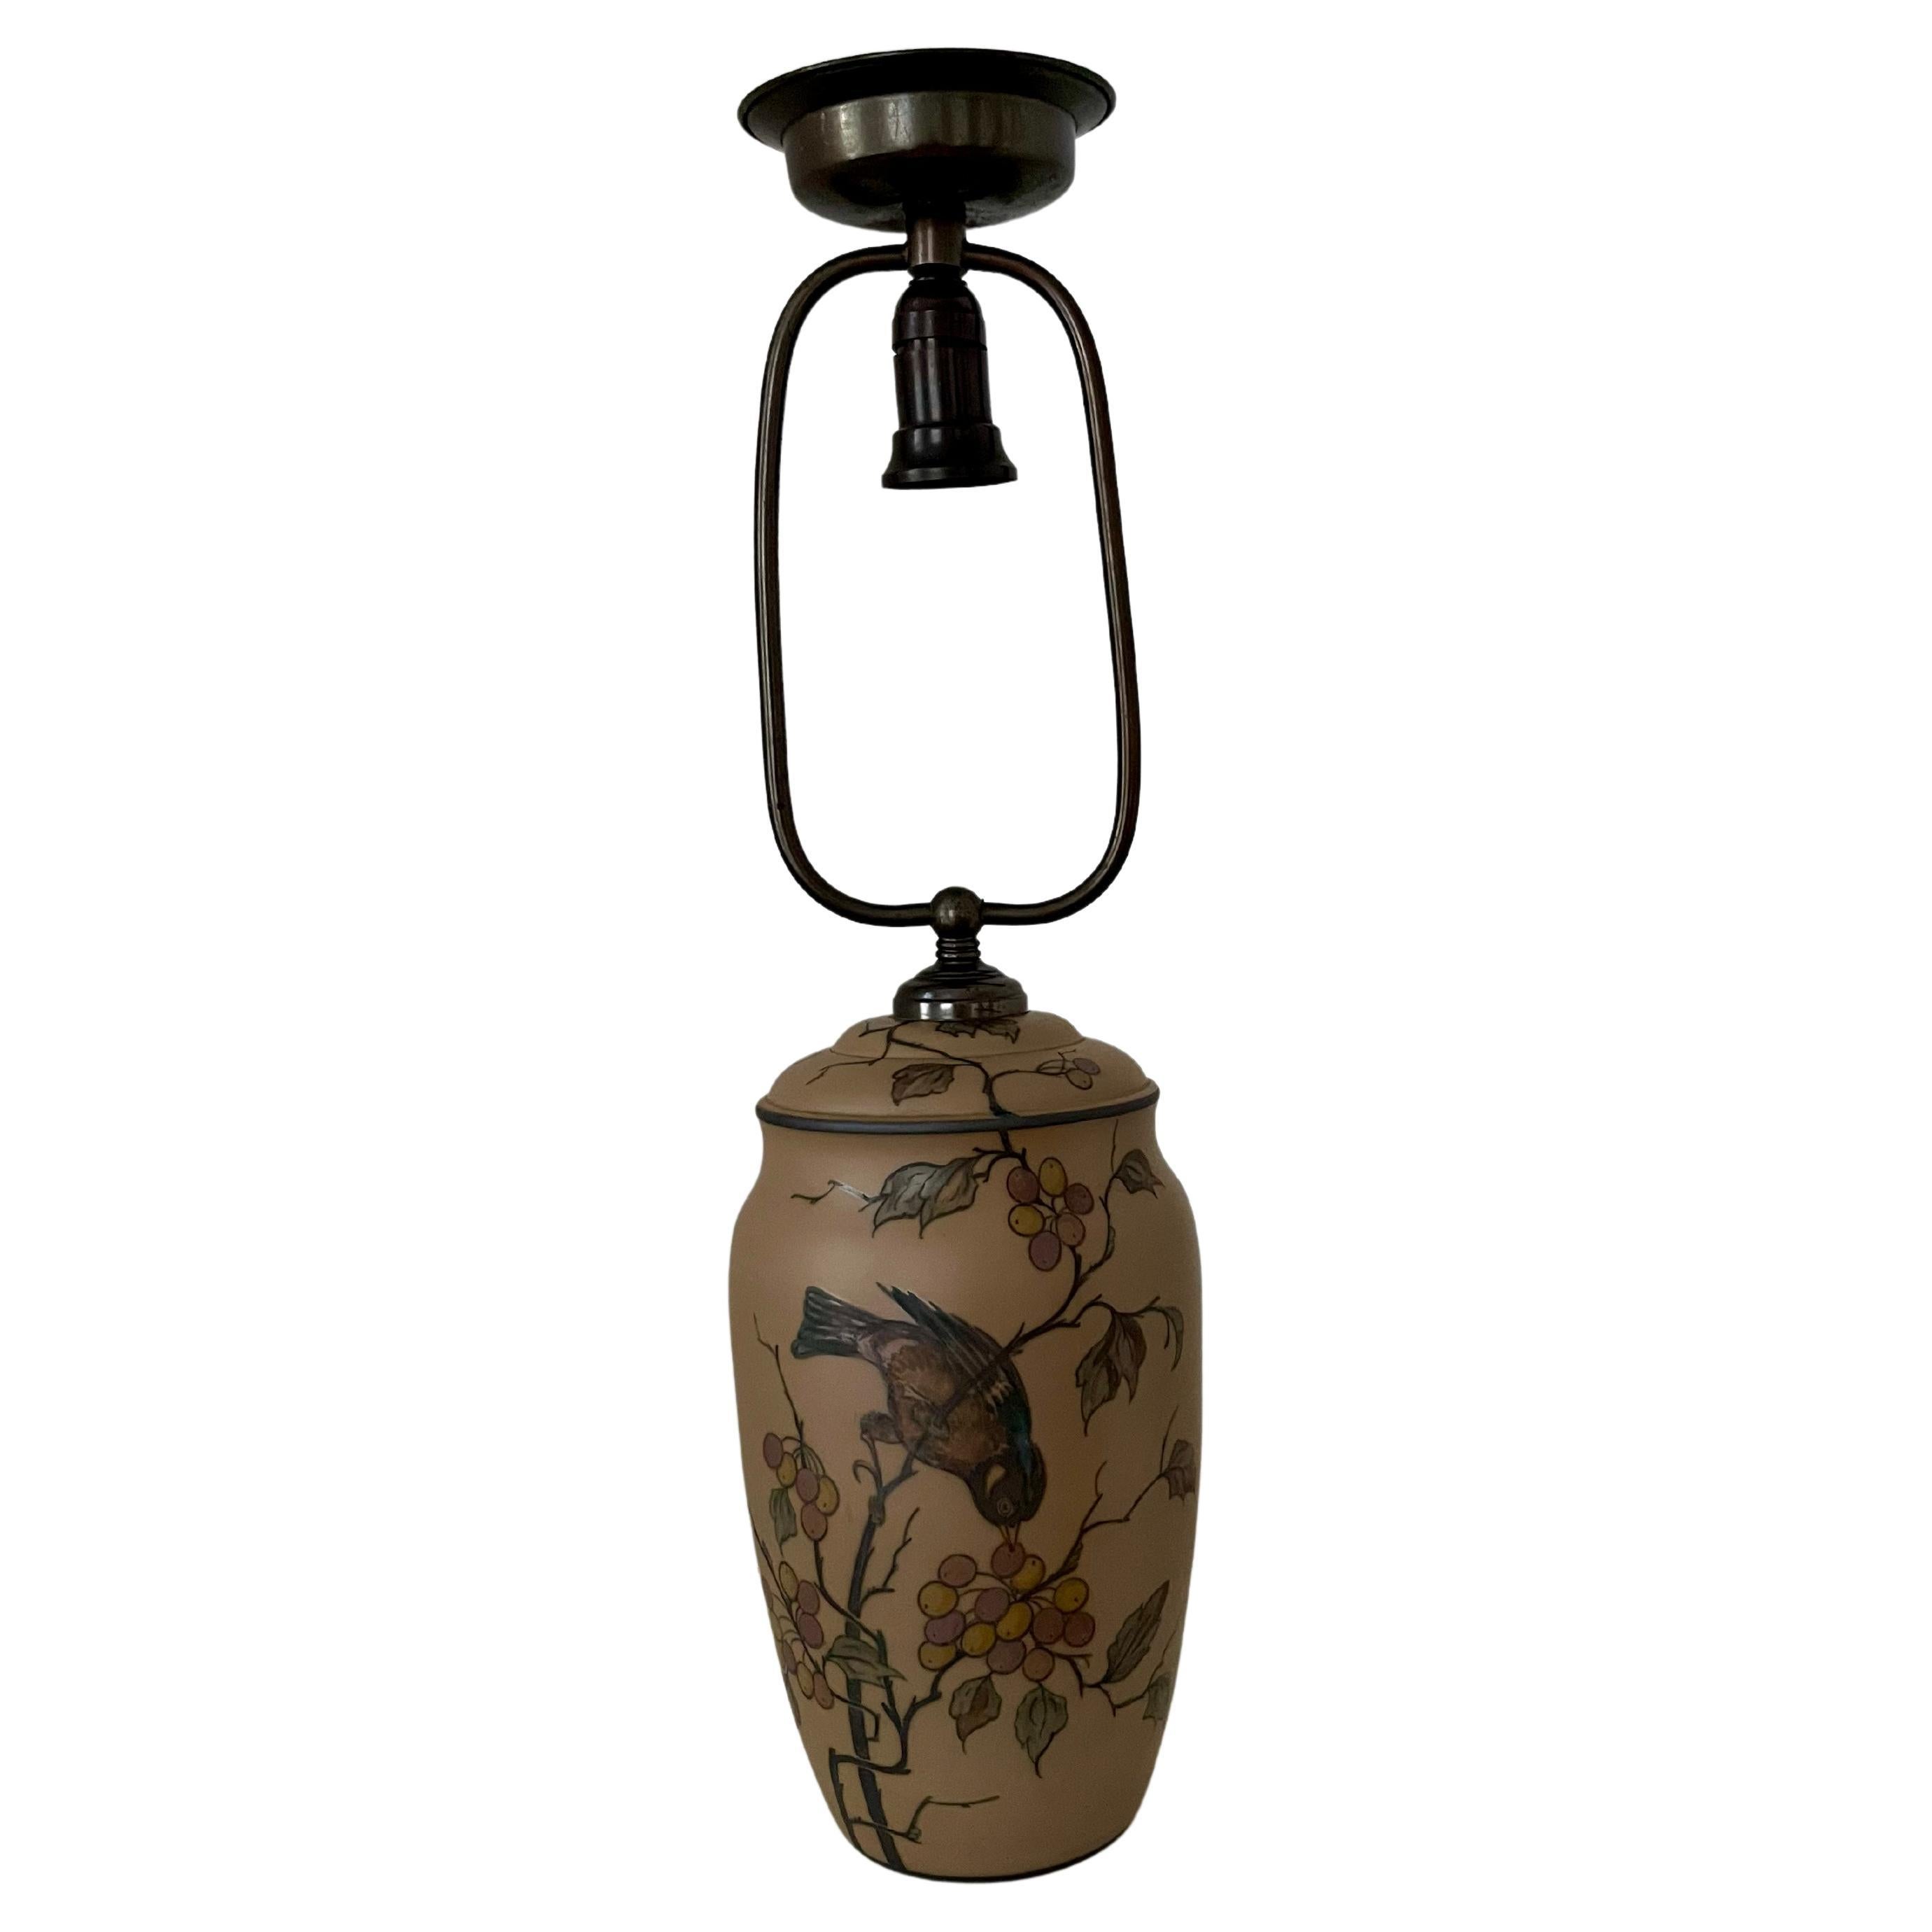 Lampe de table Art nouveau en céramique danoise, décorée à la main, fabriquée par l'usine de céramique I.L.A. sur l'île danoise de Bornholm, réputée pour ses ateliers de céramique exceptionnels. Cette lampe de table est décorée à la main d'un oiseau